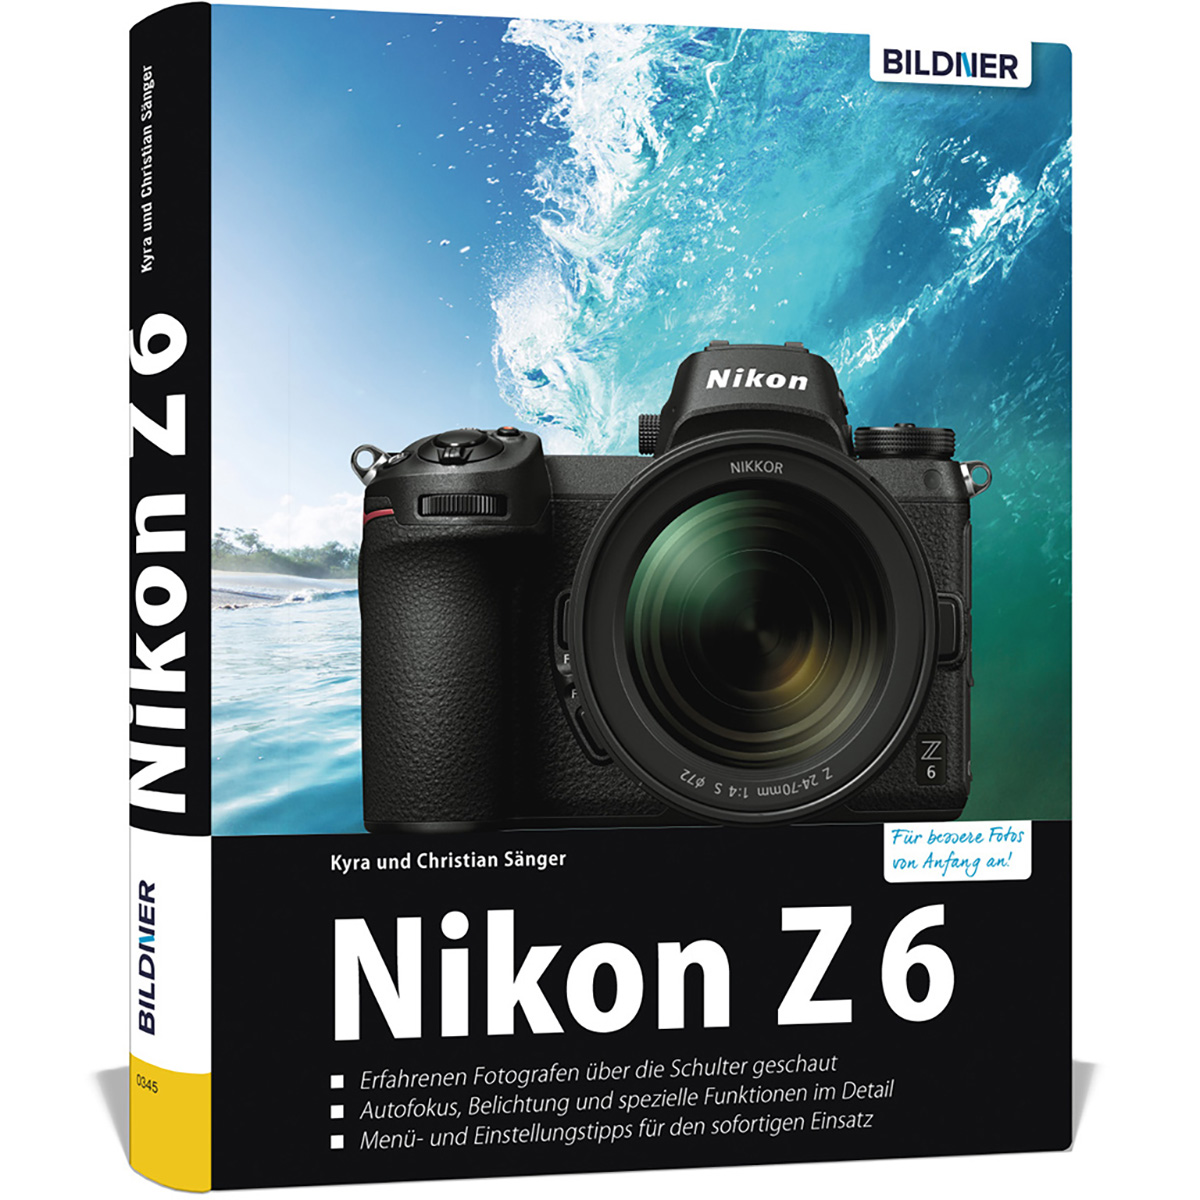 Nikon Z6 - Das Praxisbuch umfangreiche Ihrer zu Kamera